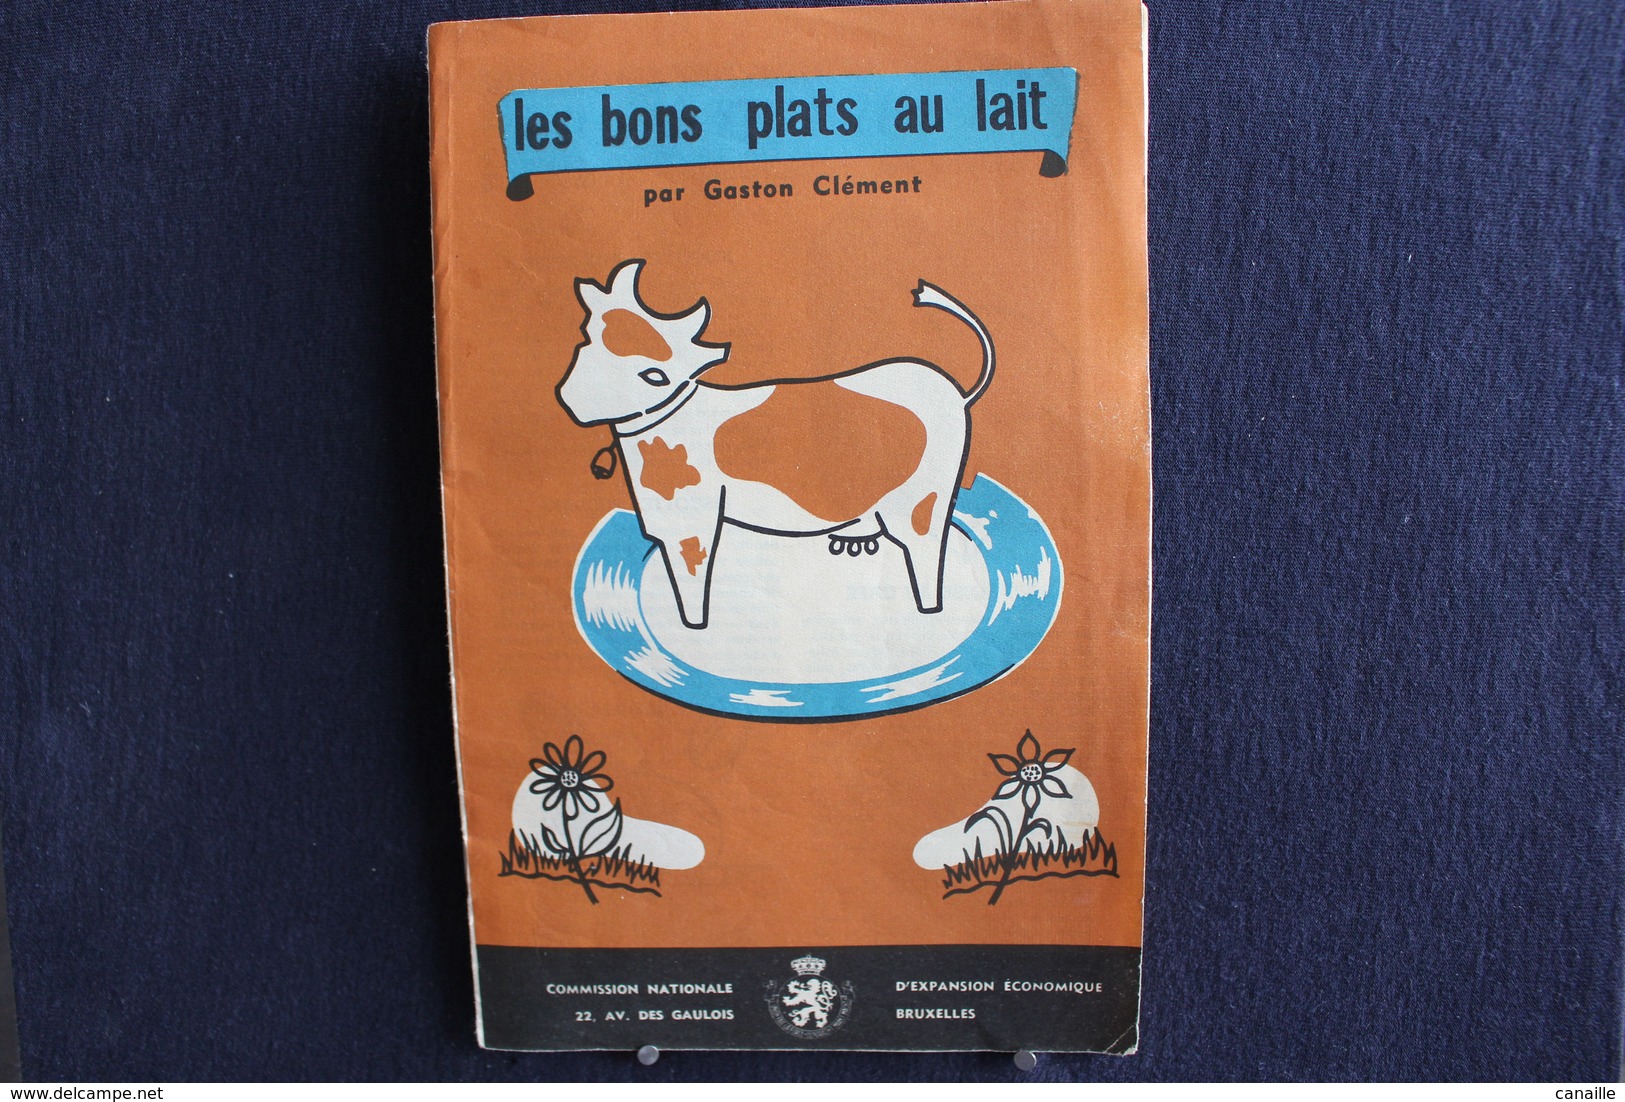 Publicités ( 4 )  - Livret De Cuisine - Par Gaston Clément - Les Bons Plats Au Lait -  Forma 13x20 Cm 8 Page - Küche & Wein